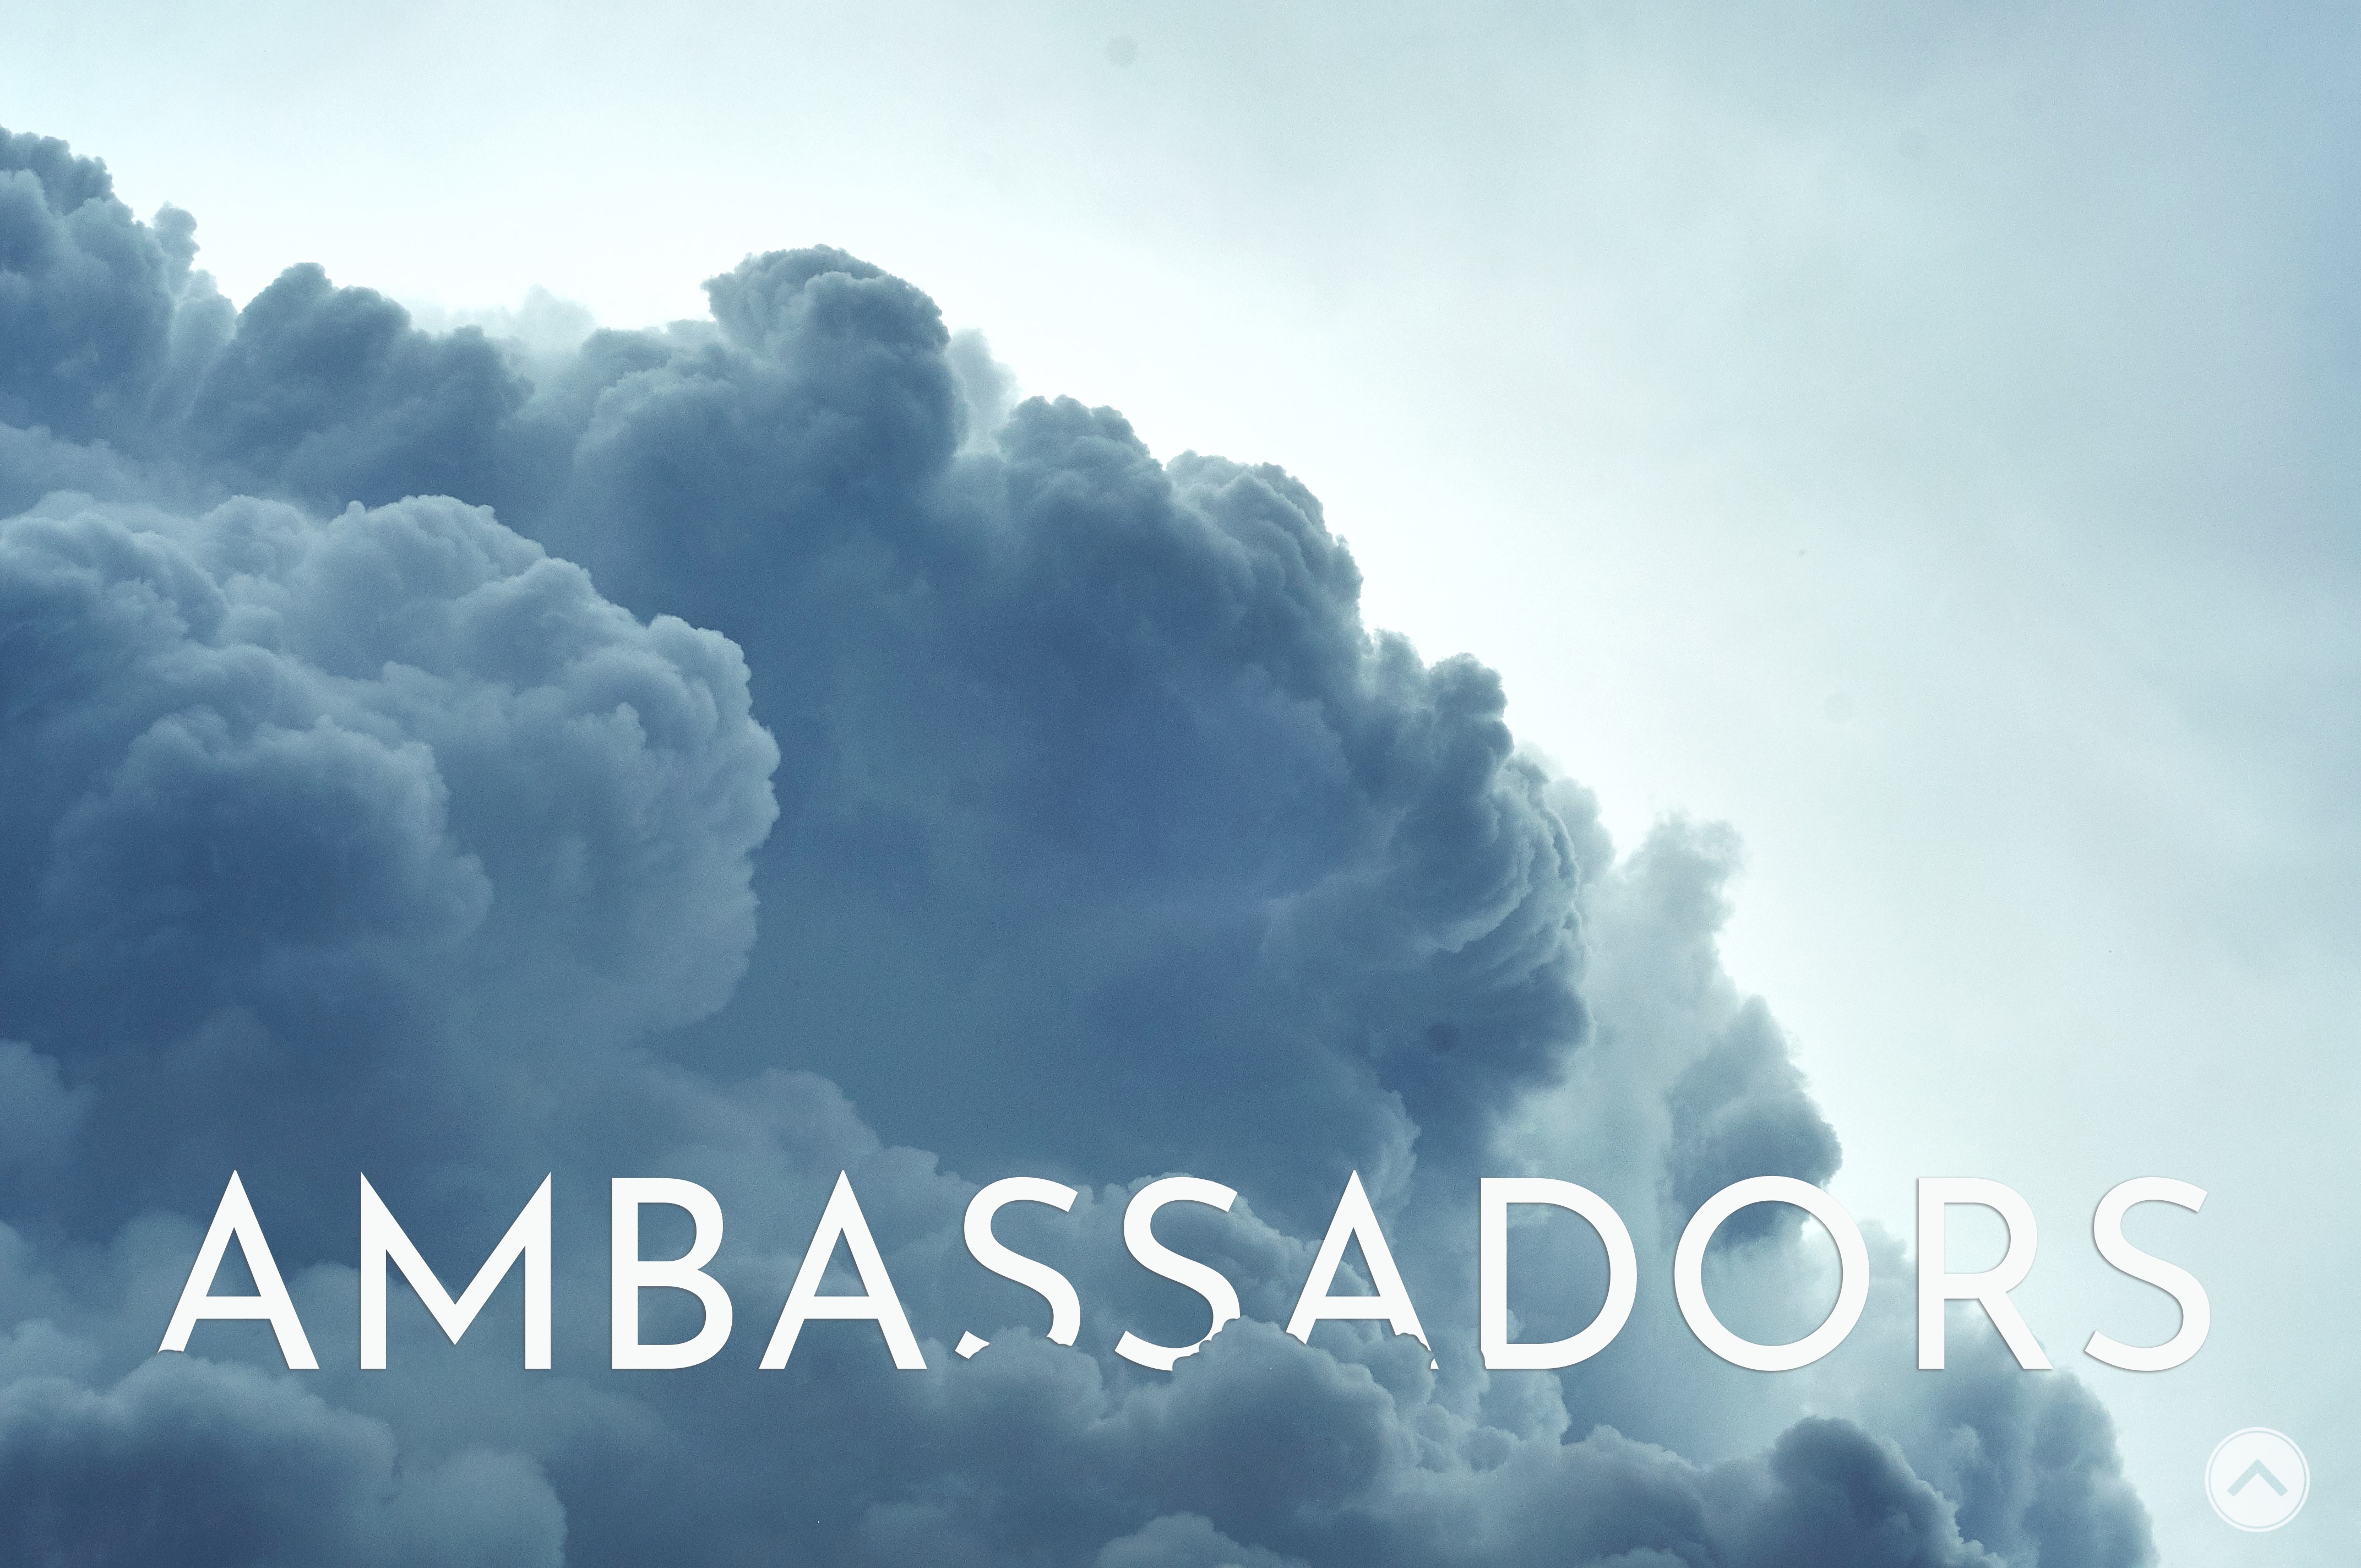 Ambassadors image